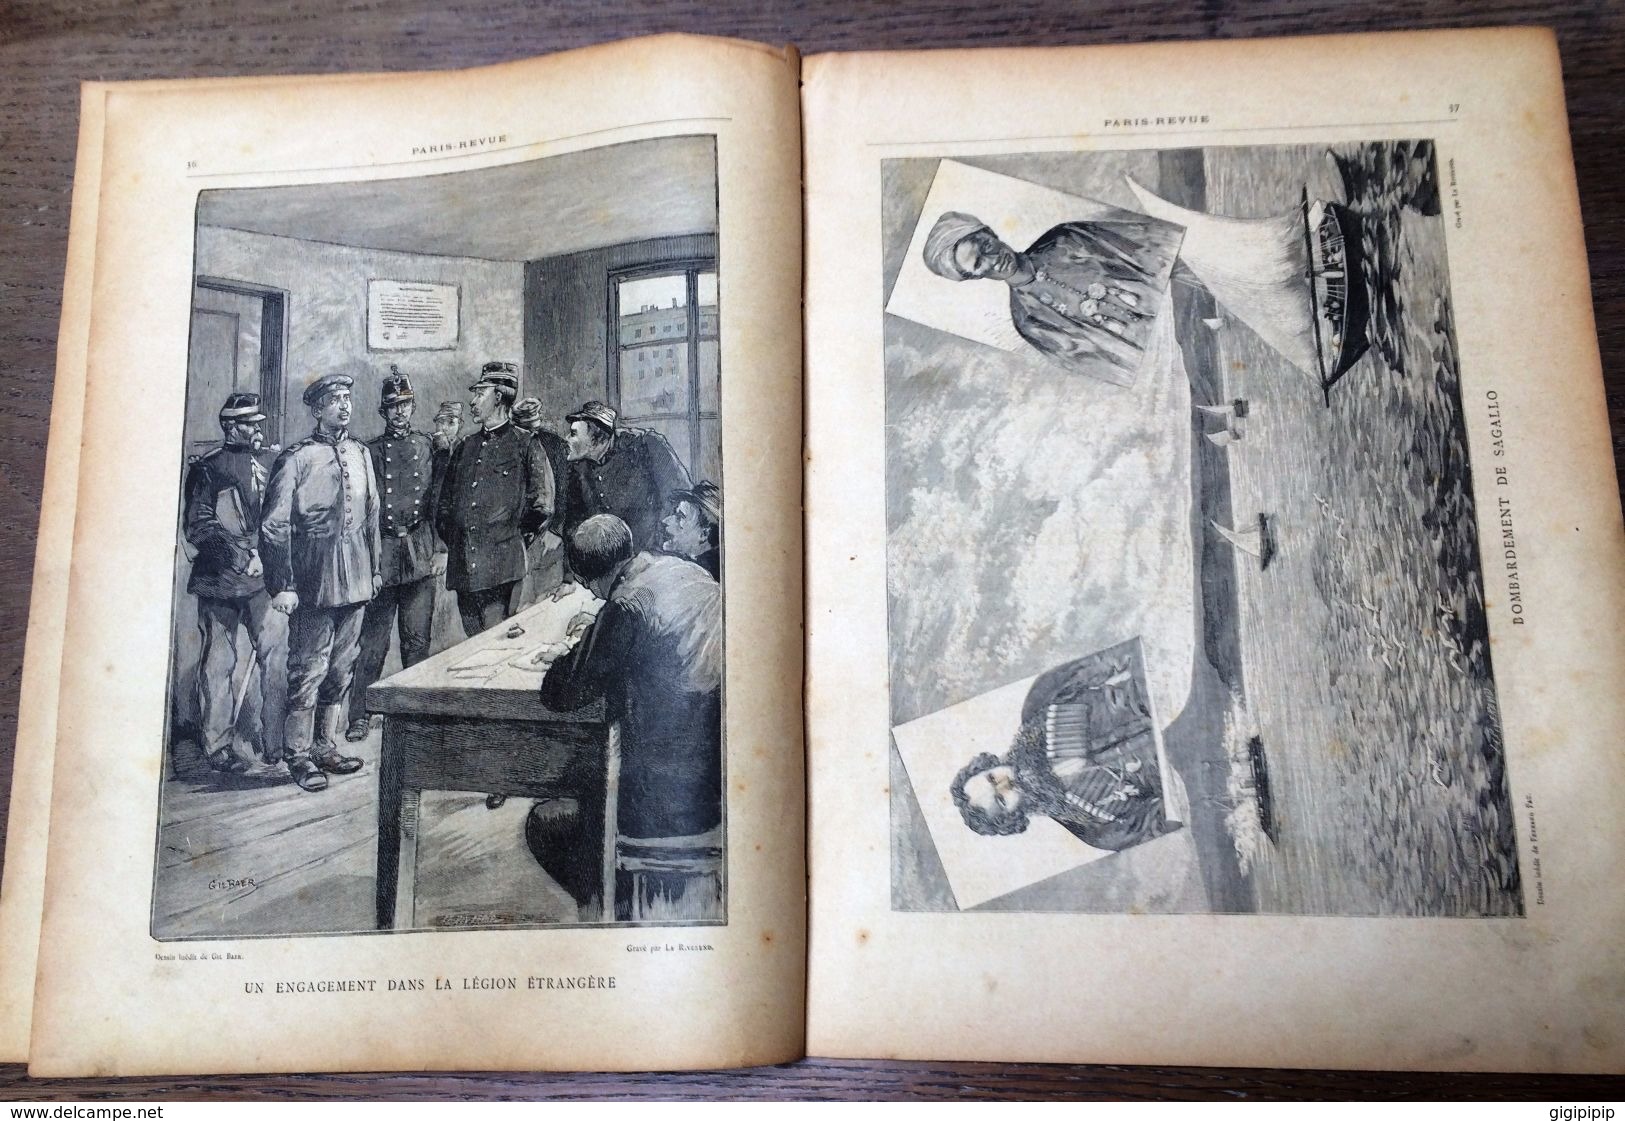 RARE PARIS REVUE 1889 5 CHARLES BIQUAL PAUVRE PETIT JOAN BERG ENGAGEMENT LEGION ETRANGERE GIL BAER - Autre Magazines